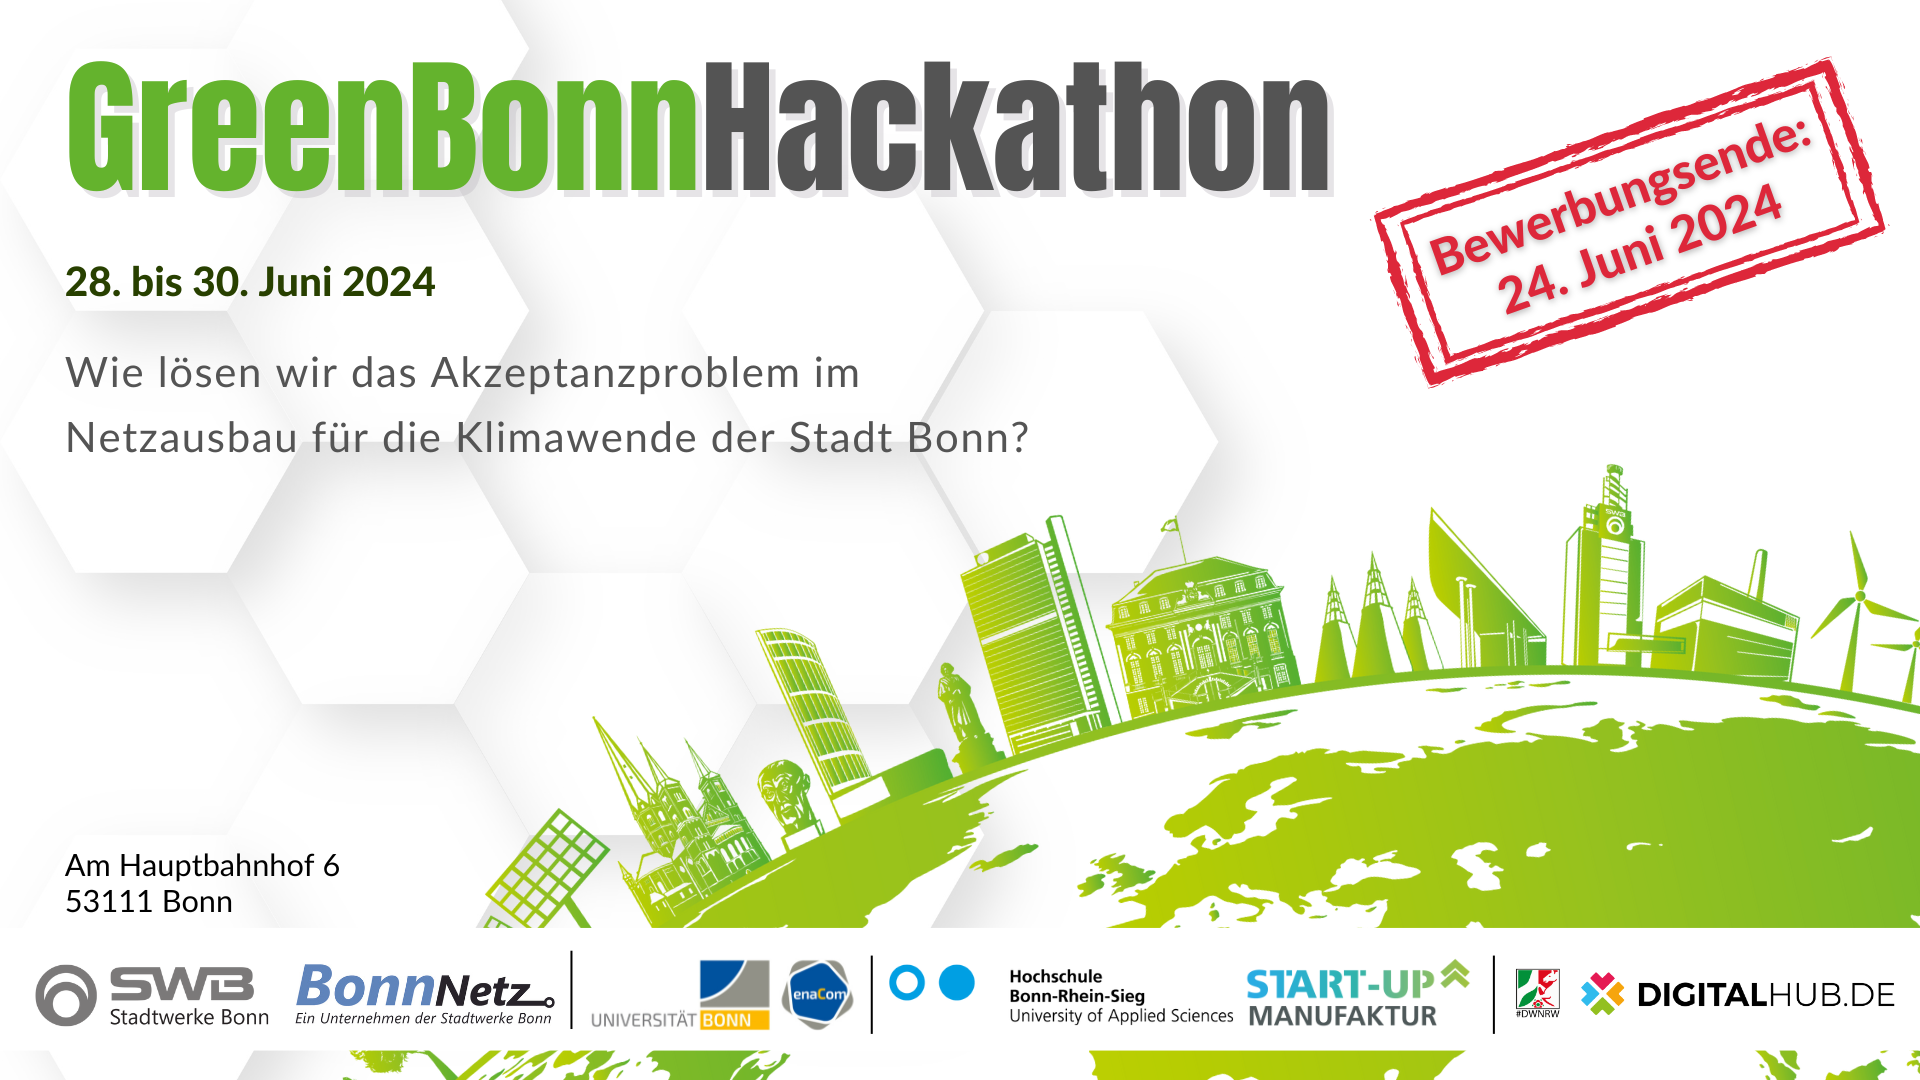 GreenBonn Hackathon: Gemeinsam Lösungen für die Klimawende entwickeln